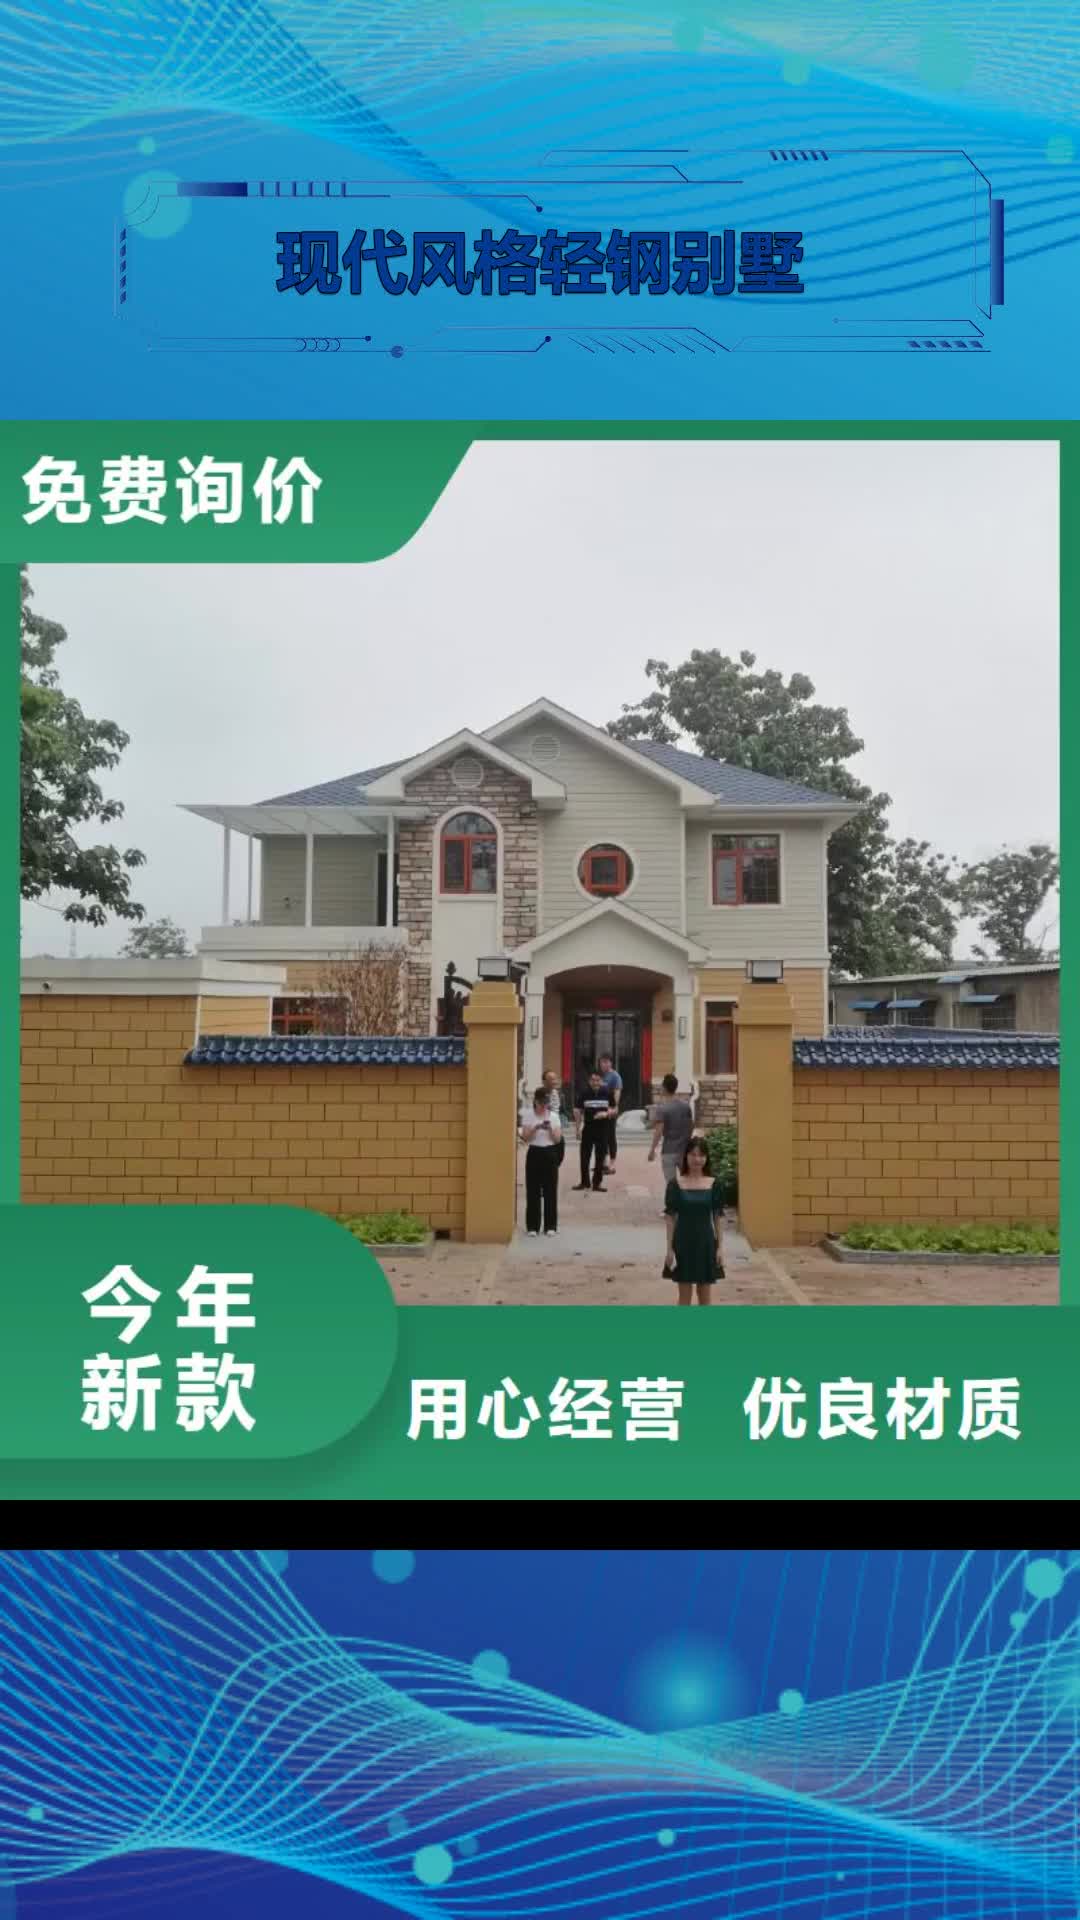 黑龙江 现代风格轻钢别墅,【轻钢房屋】厂家采购